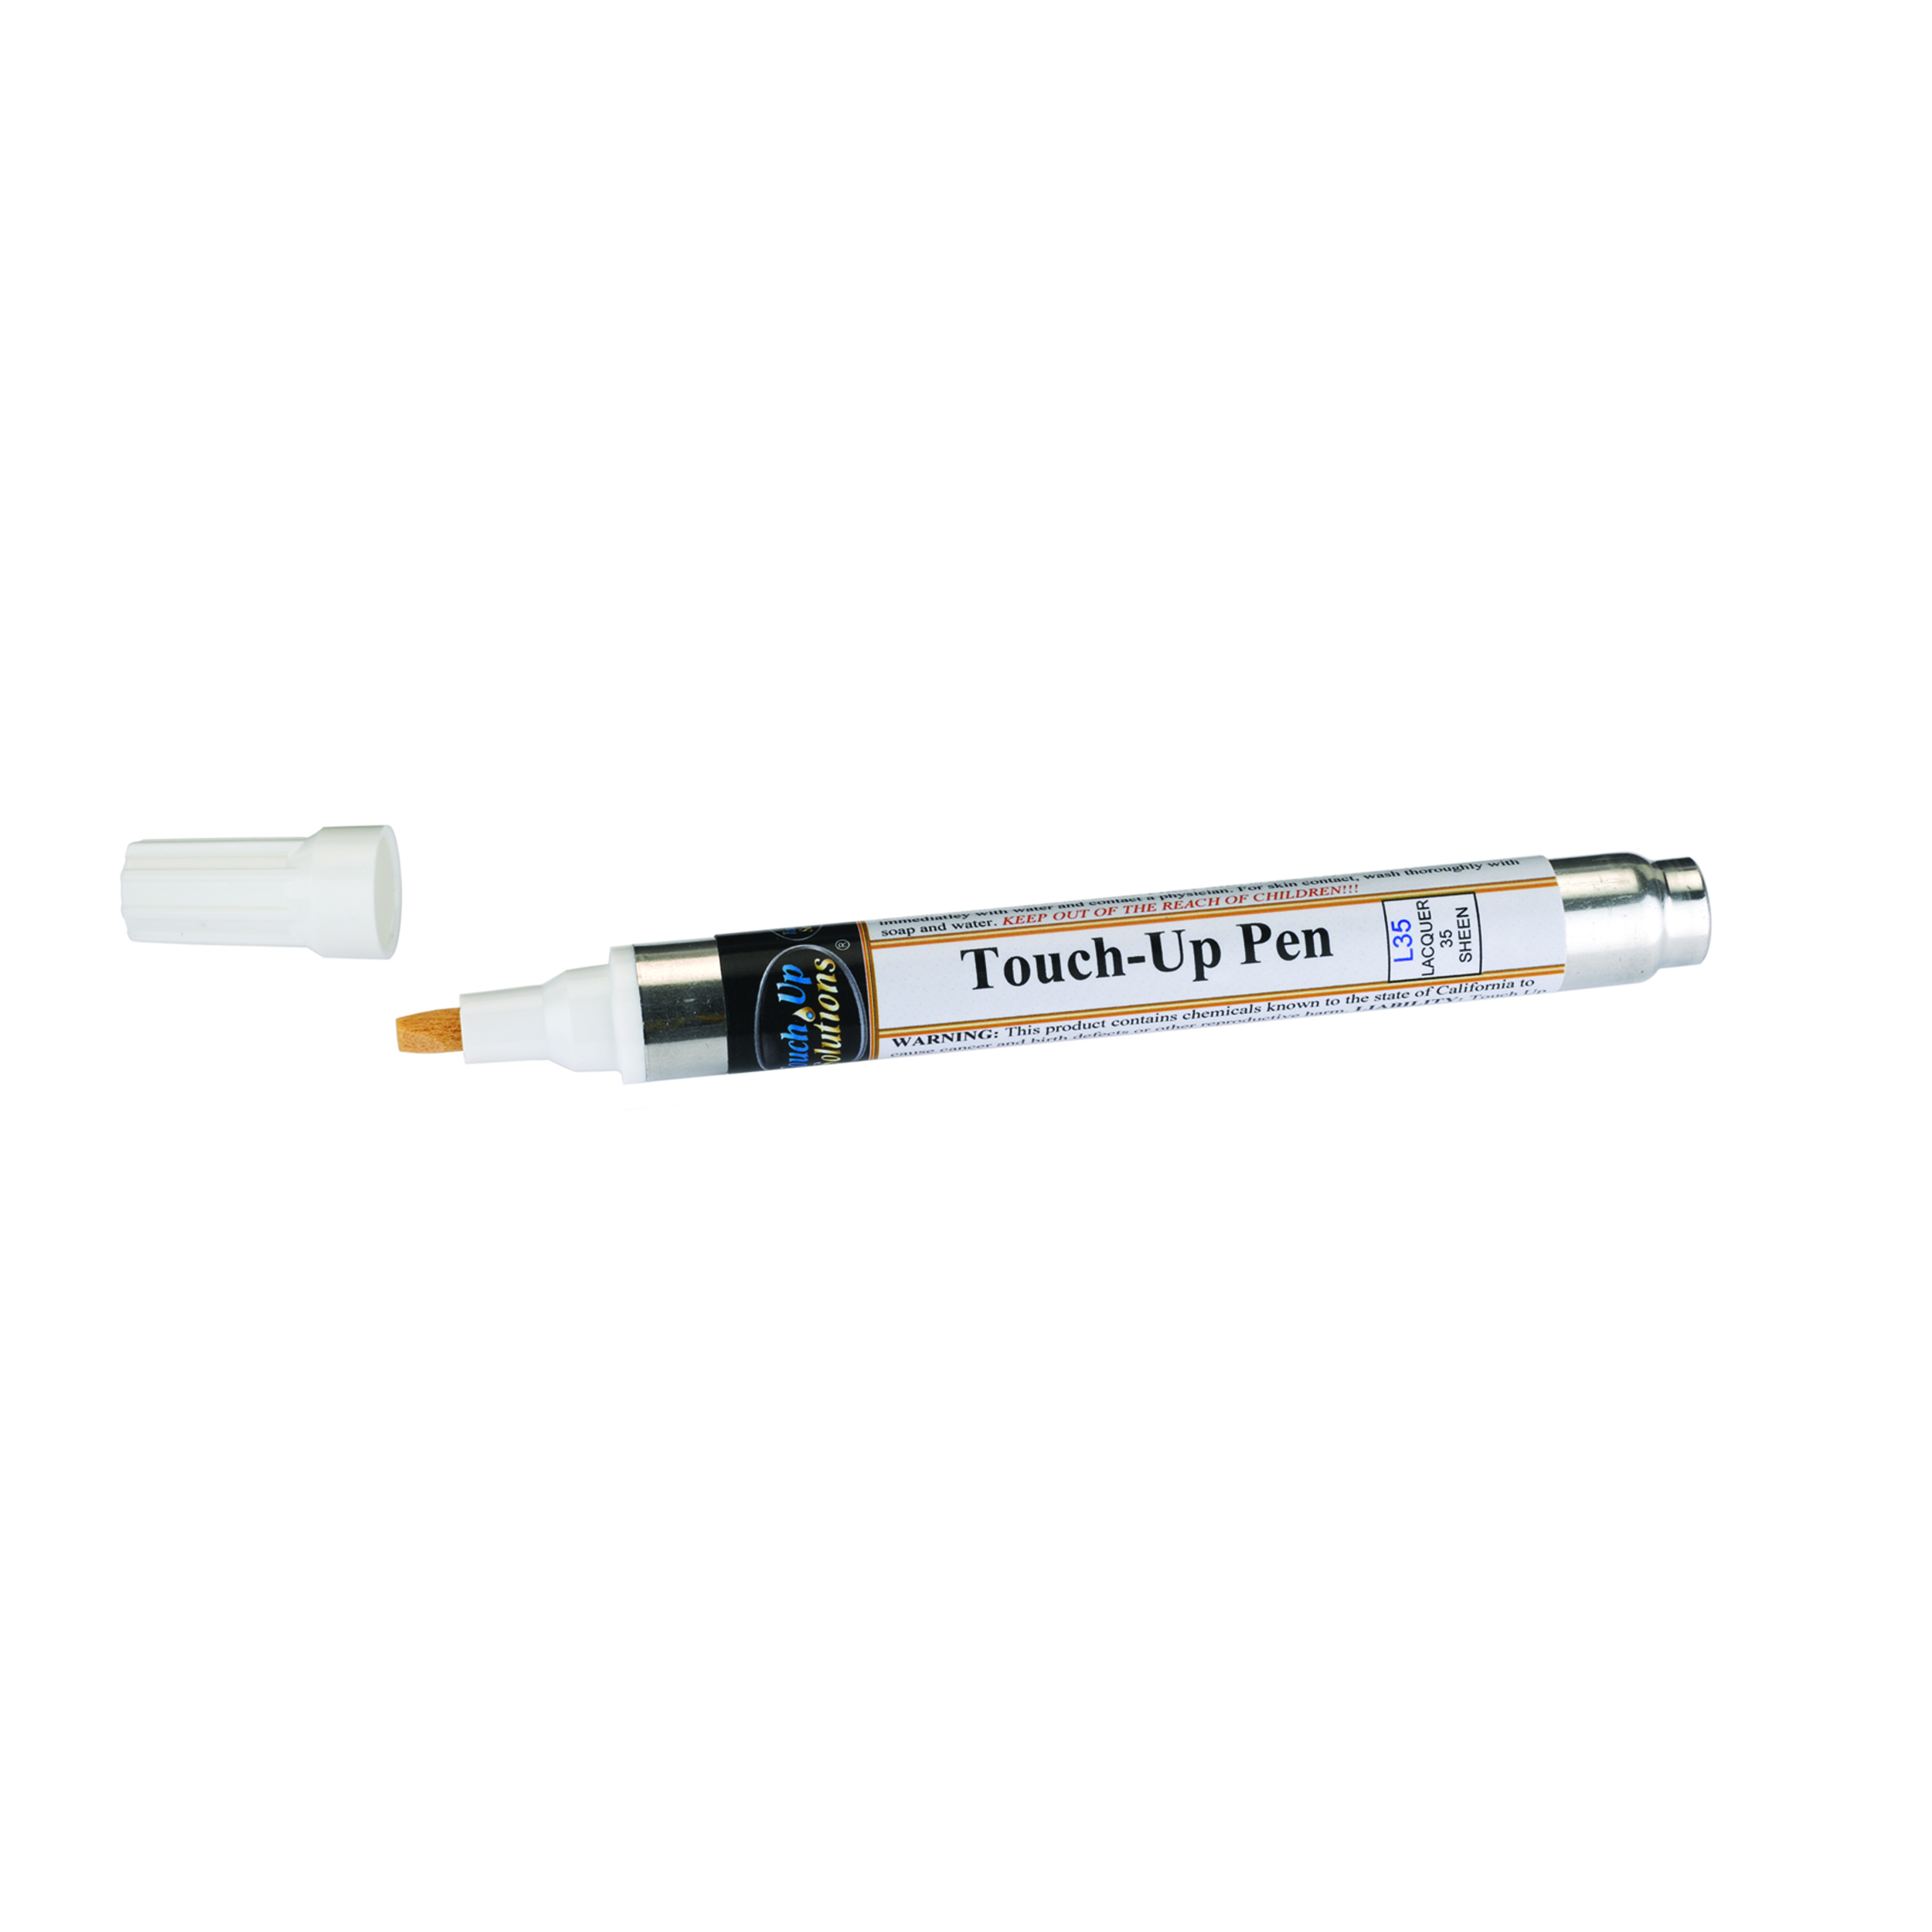 Touchup Pen Clear Lacquer Semi-gloss 35 Sheen